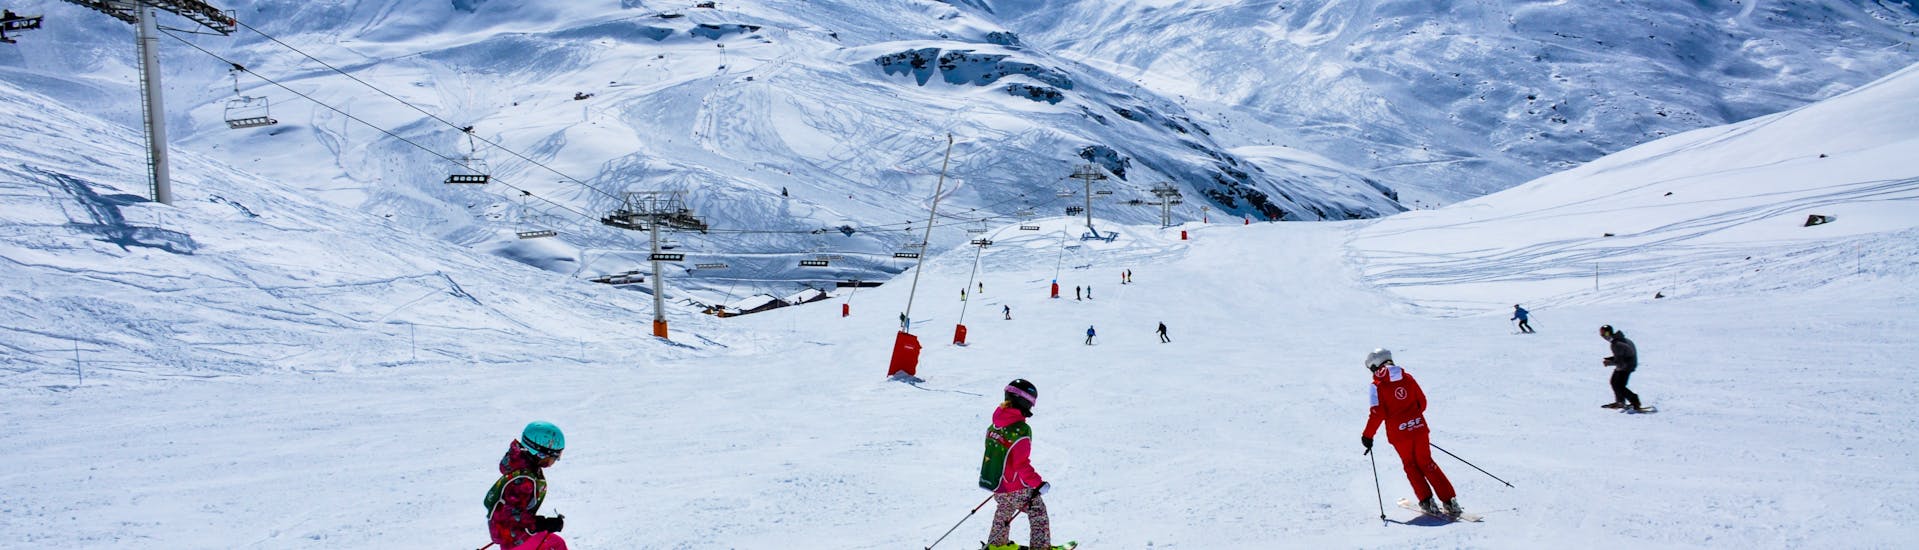 Durant un cours de ski pour enfants Super 6 de l'ESF Val Thorens, de jeunes skieurs descendent une piste avec leur moniteur.